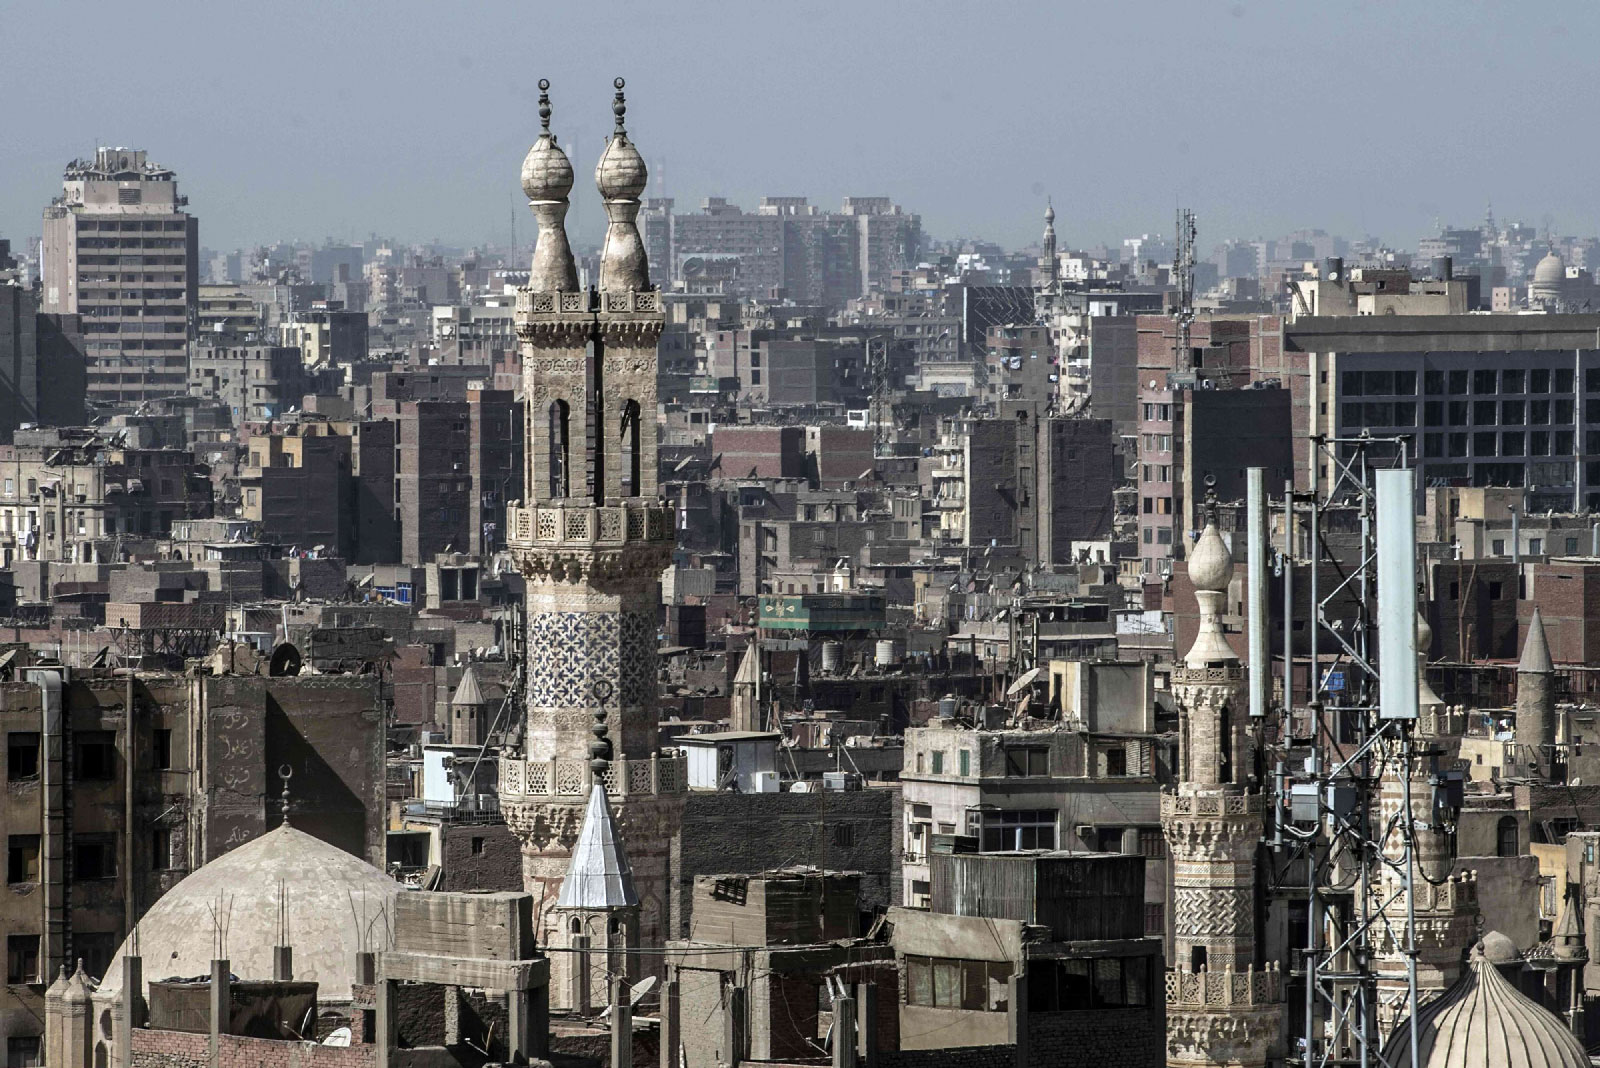 The minaret of the al-Azhar mosque in Cairo.